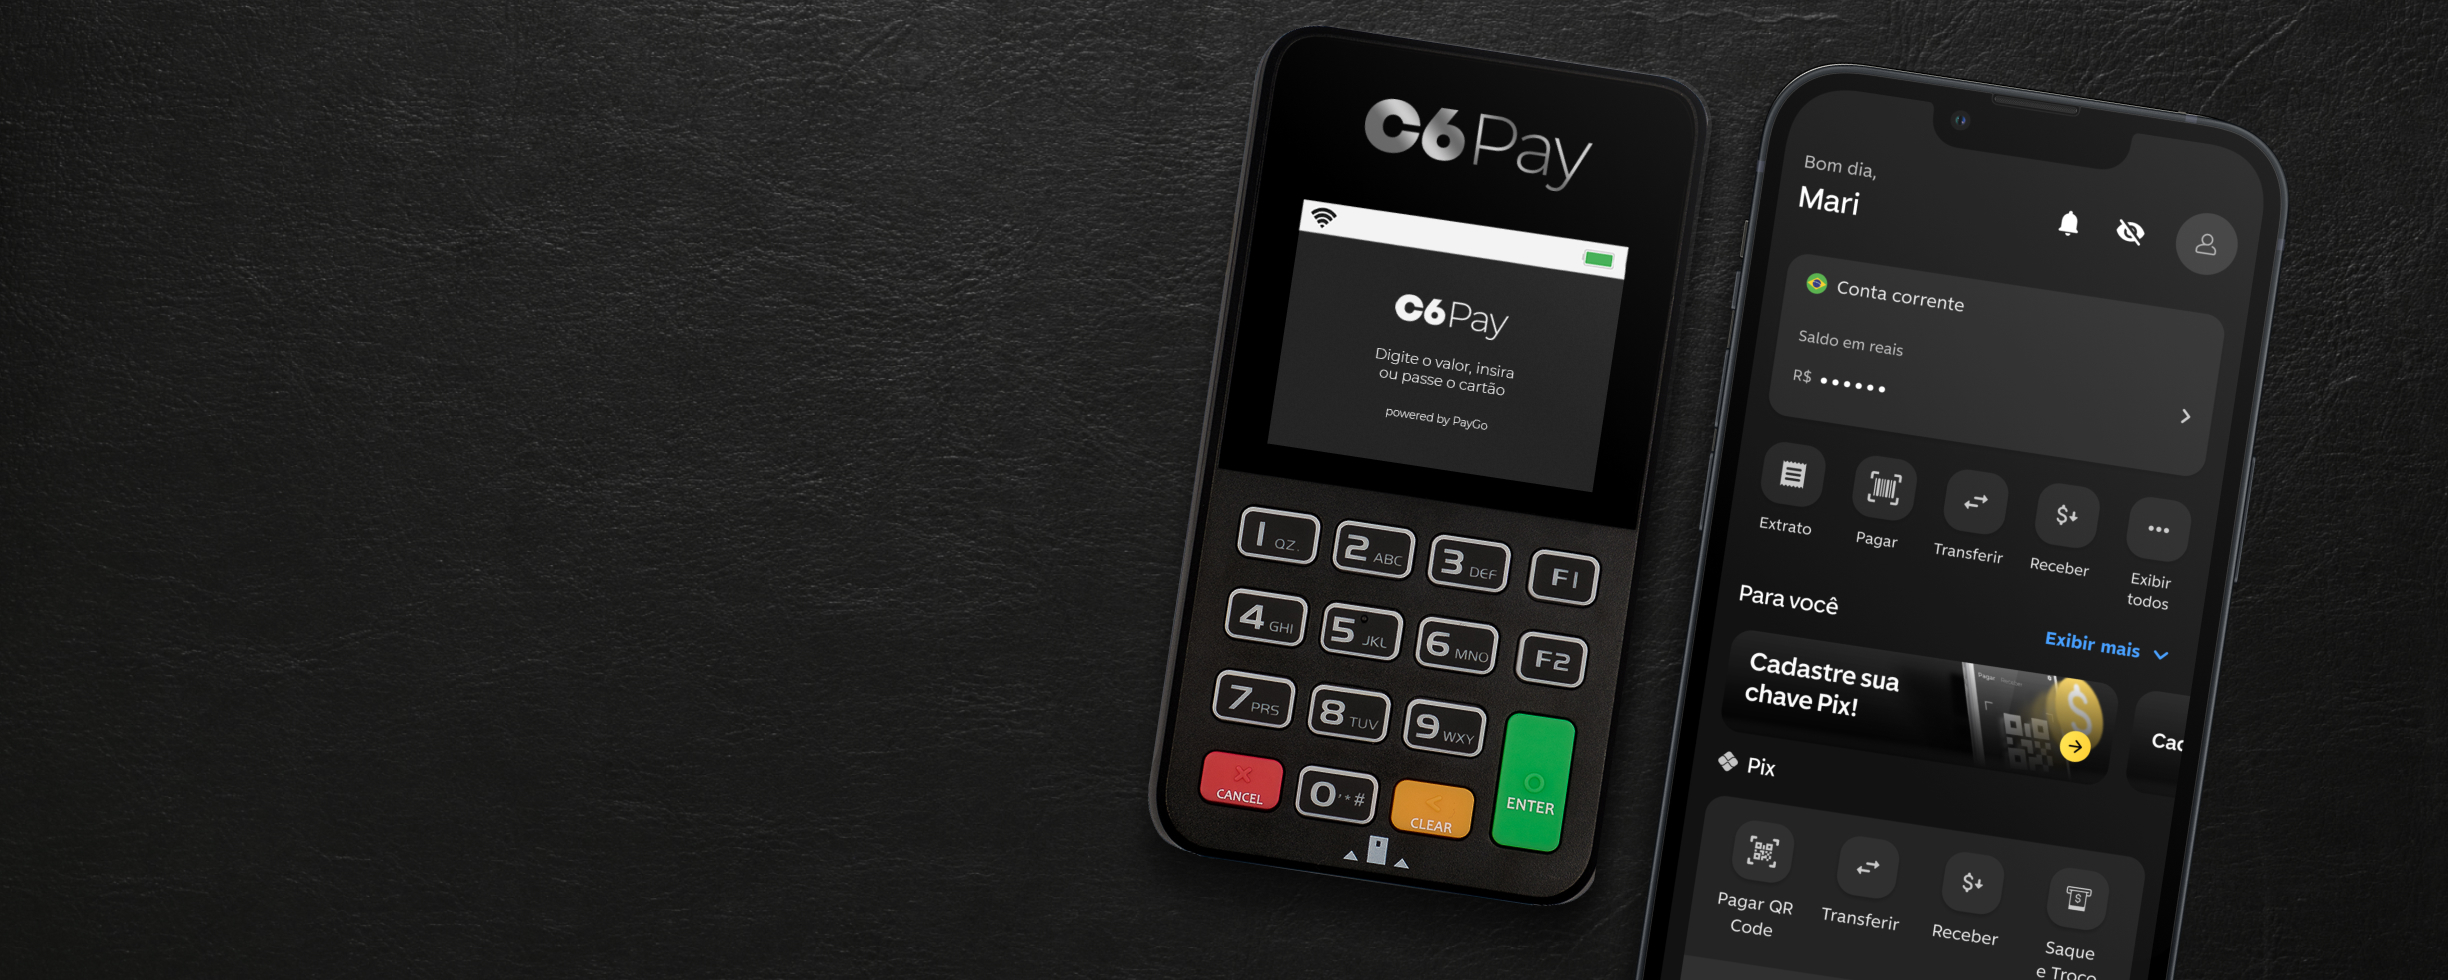 Maquininha c6 pay e celular com app C6 Bank aberto